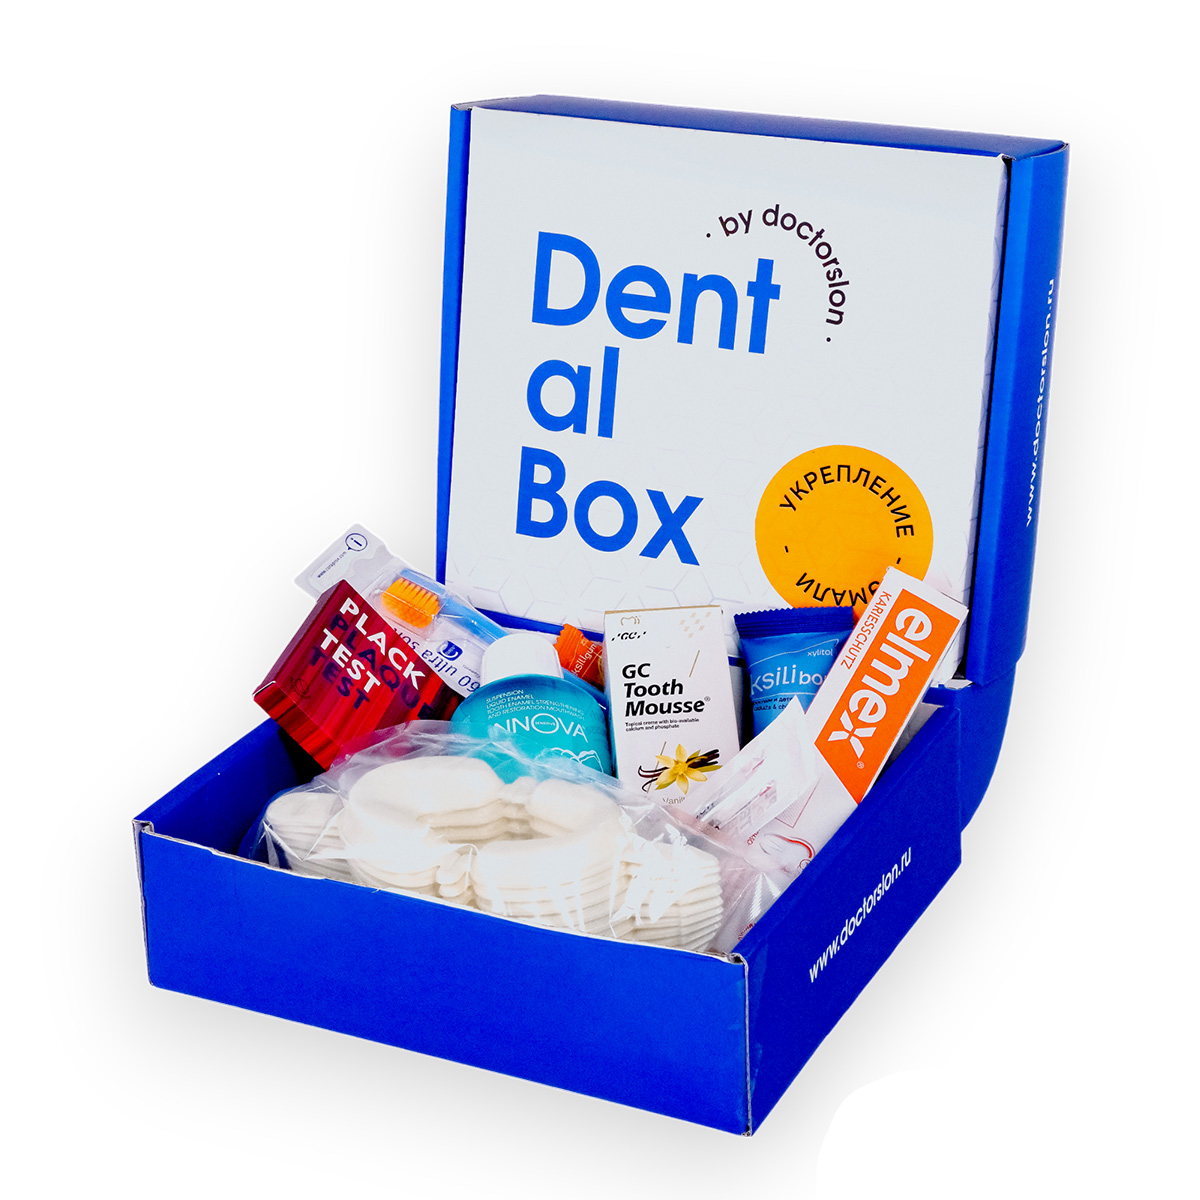 Готовый набор для гигиены Dental Box